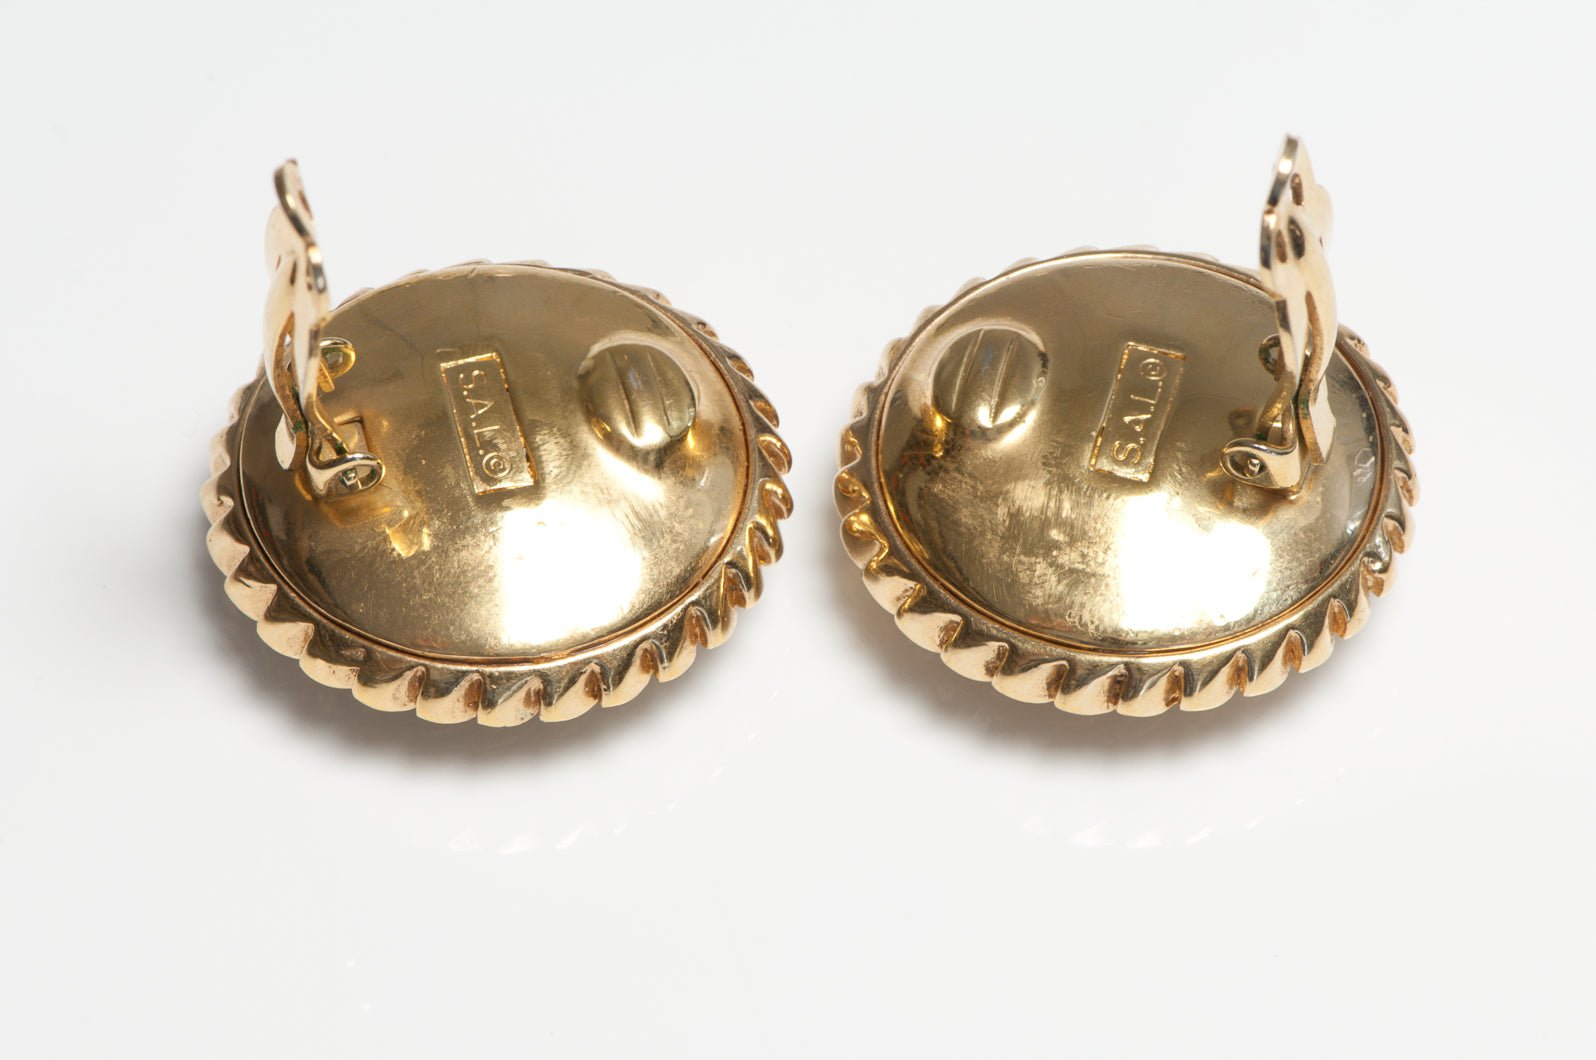 Vintage 1980's Swarovski Gold Plated Brown Crystal Rope Earrings